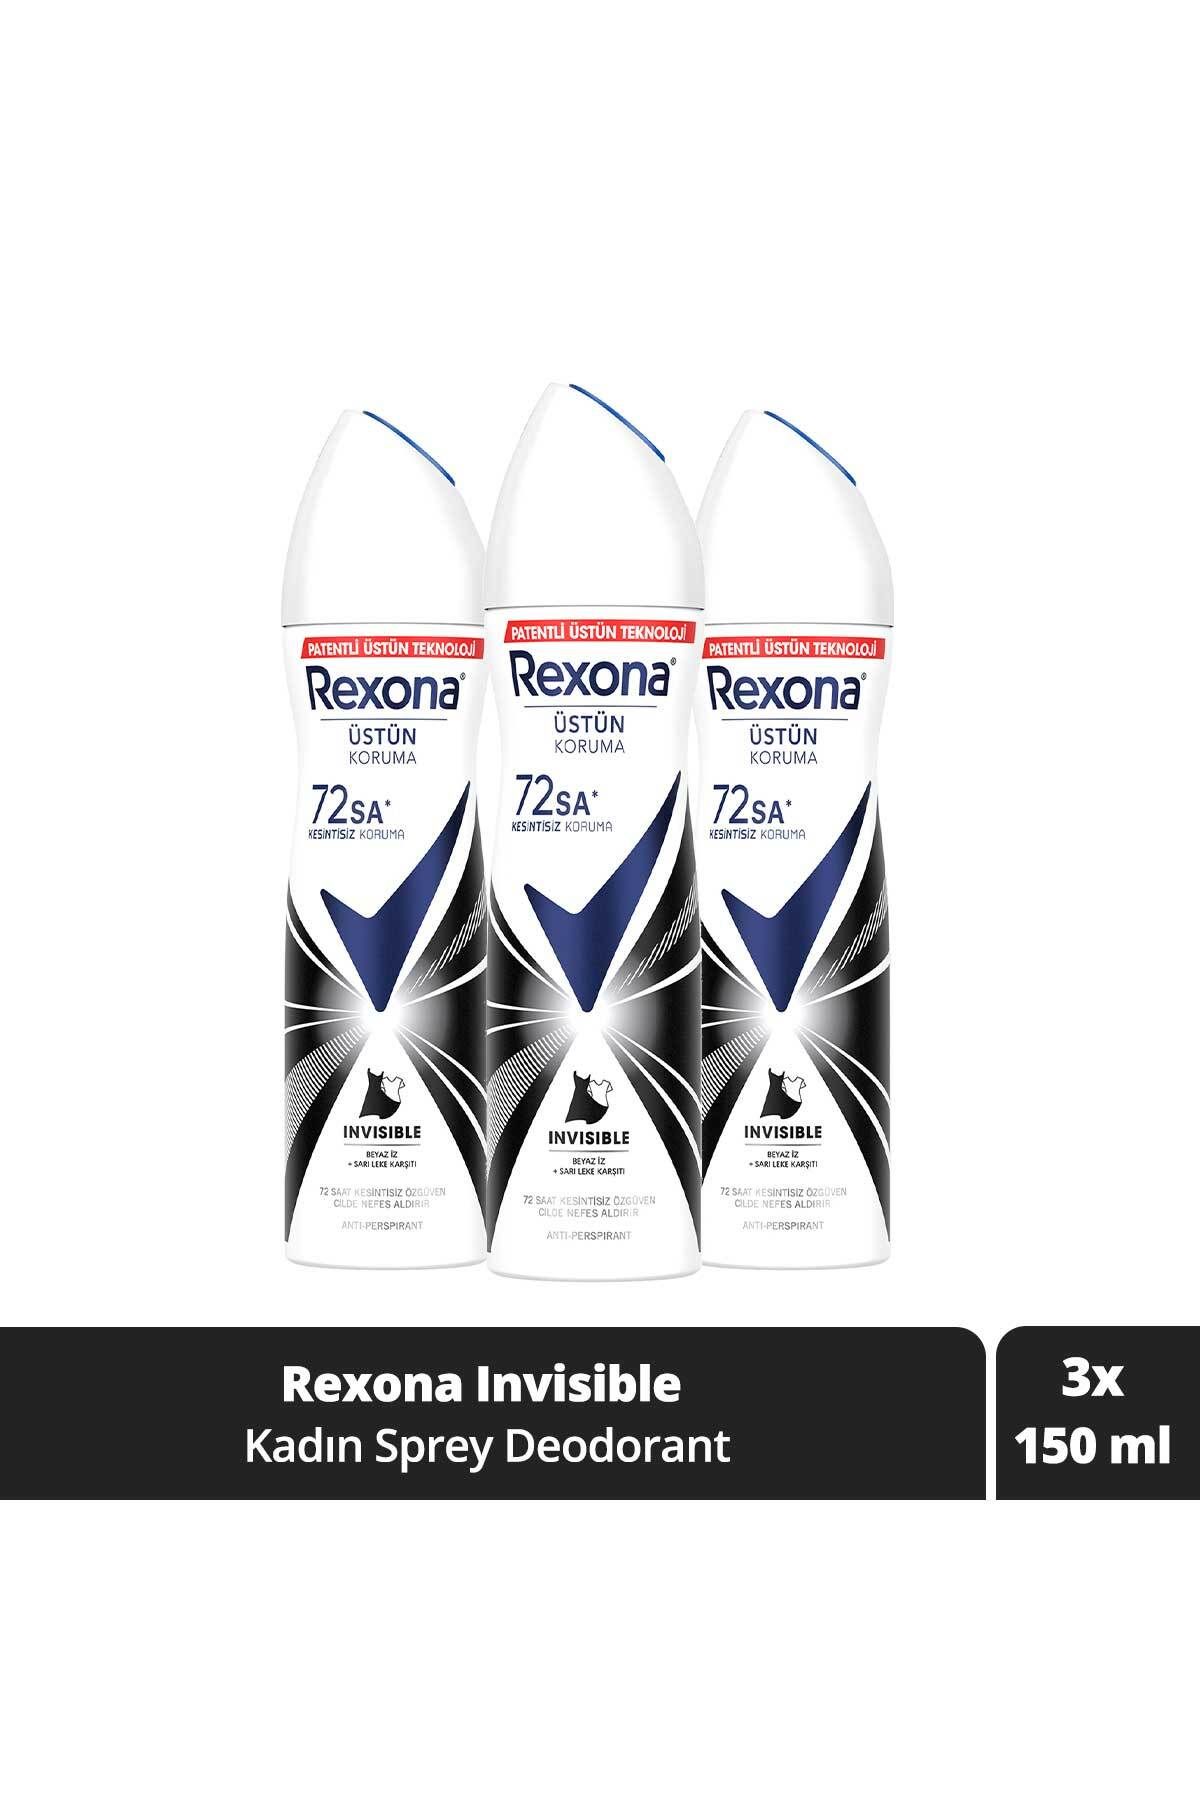 Rexona Kadın Sprey Deodorant Invisible 72 Saat Kesintisiz Koruma 150 ml x3